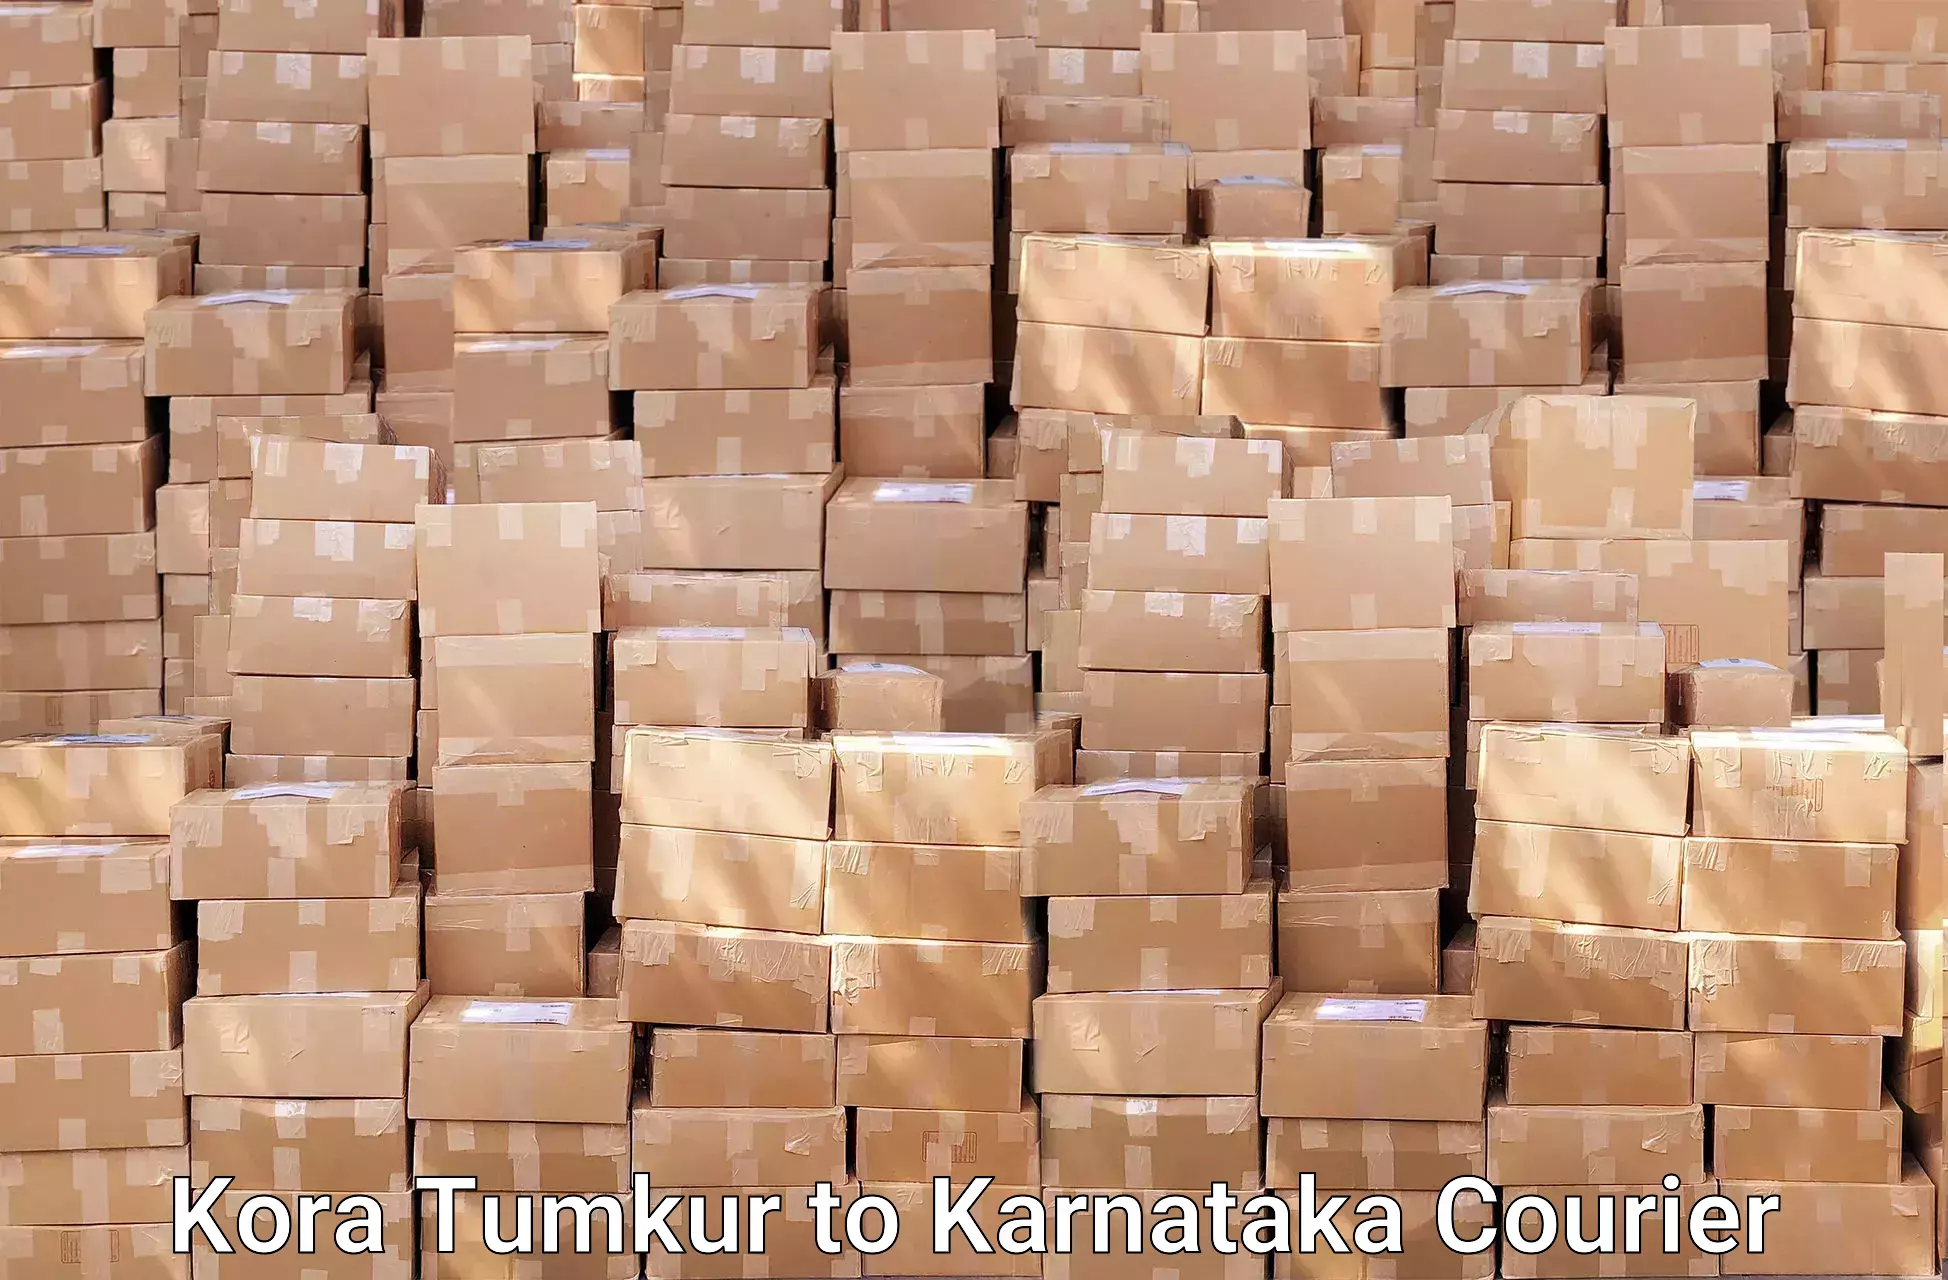 Quality furniture shipping Kora Tumkur to Huliyar